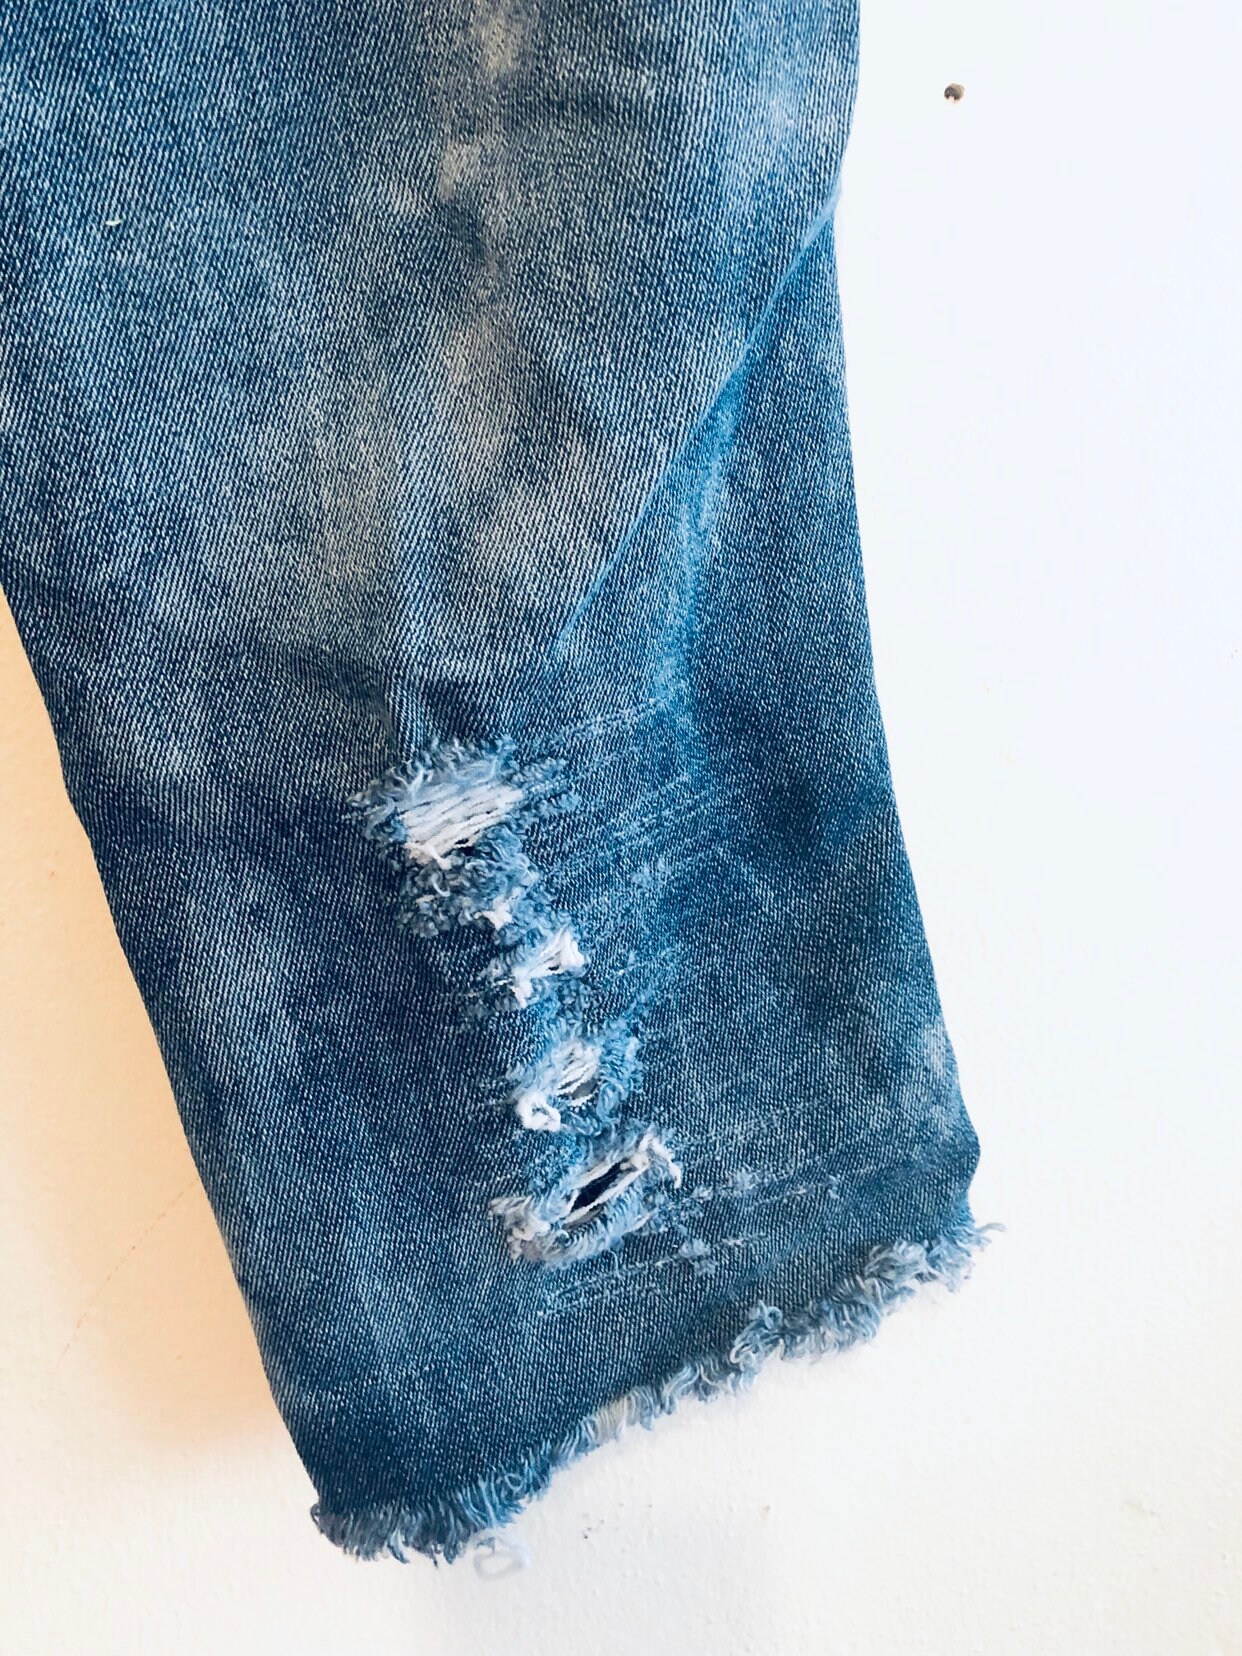 Vintage Lee high waisted patchwork denim jean capris | Etsy